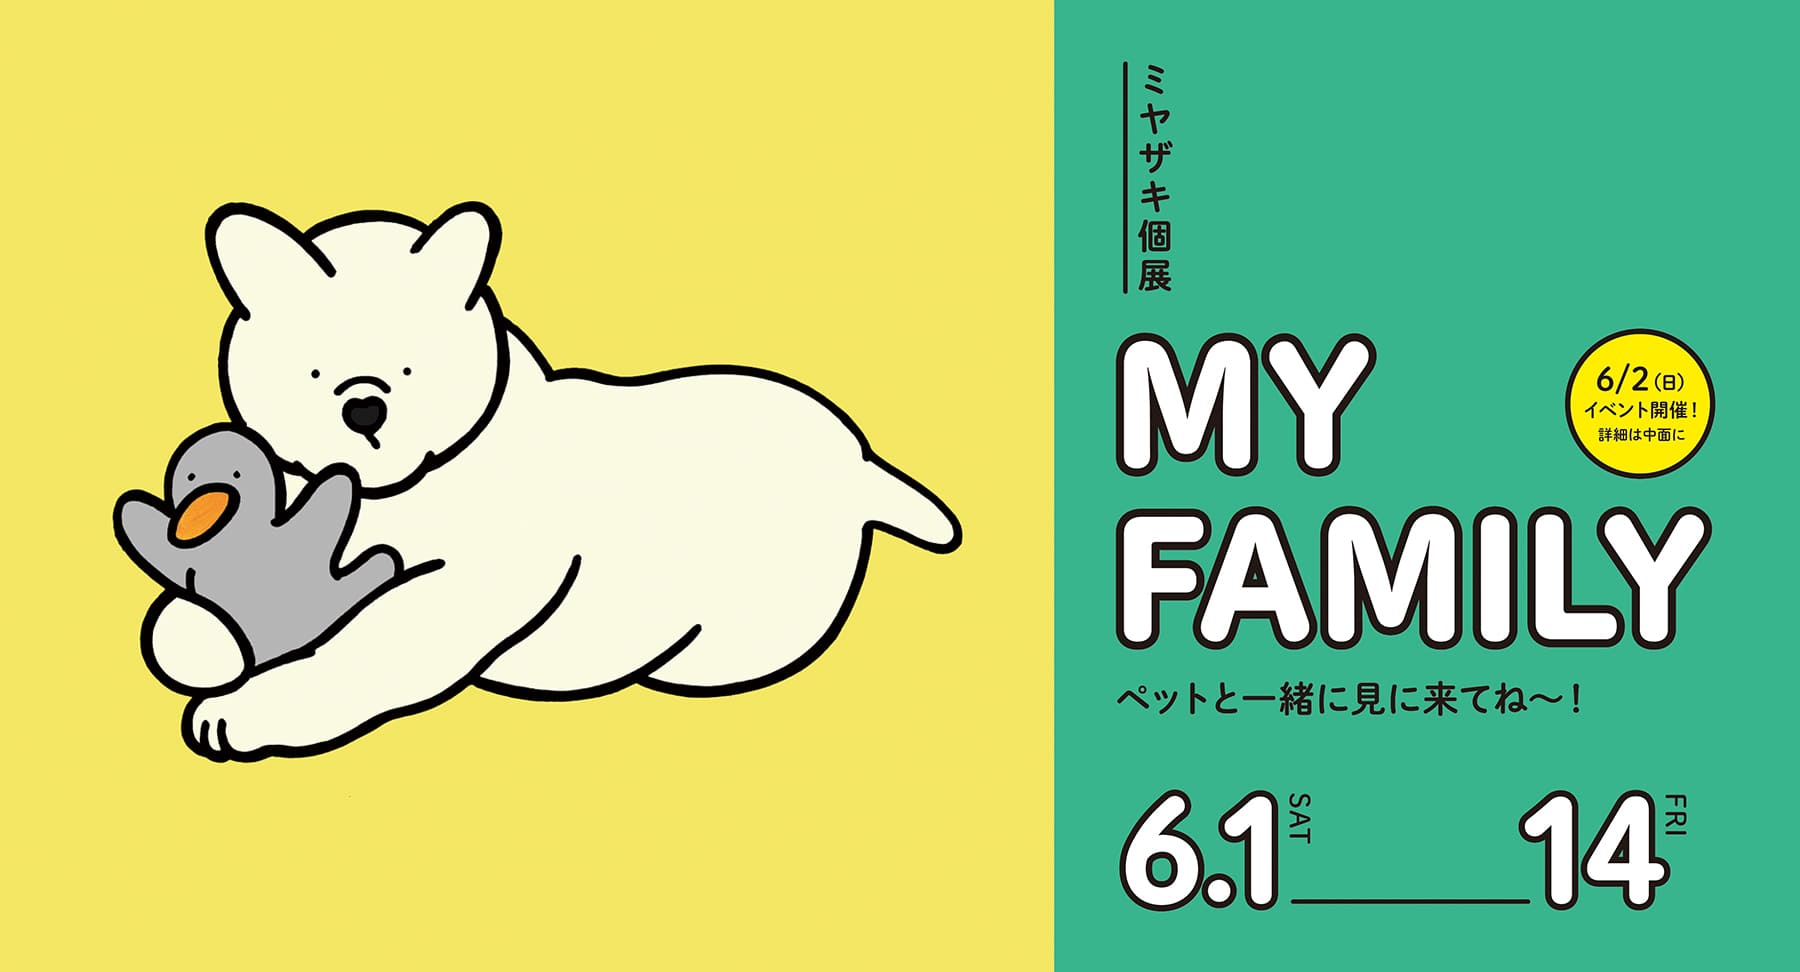 ミヤザキ個展「MY FAMILY」